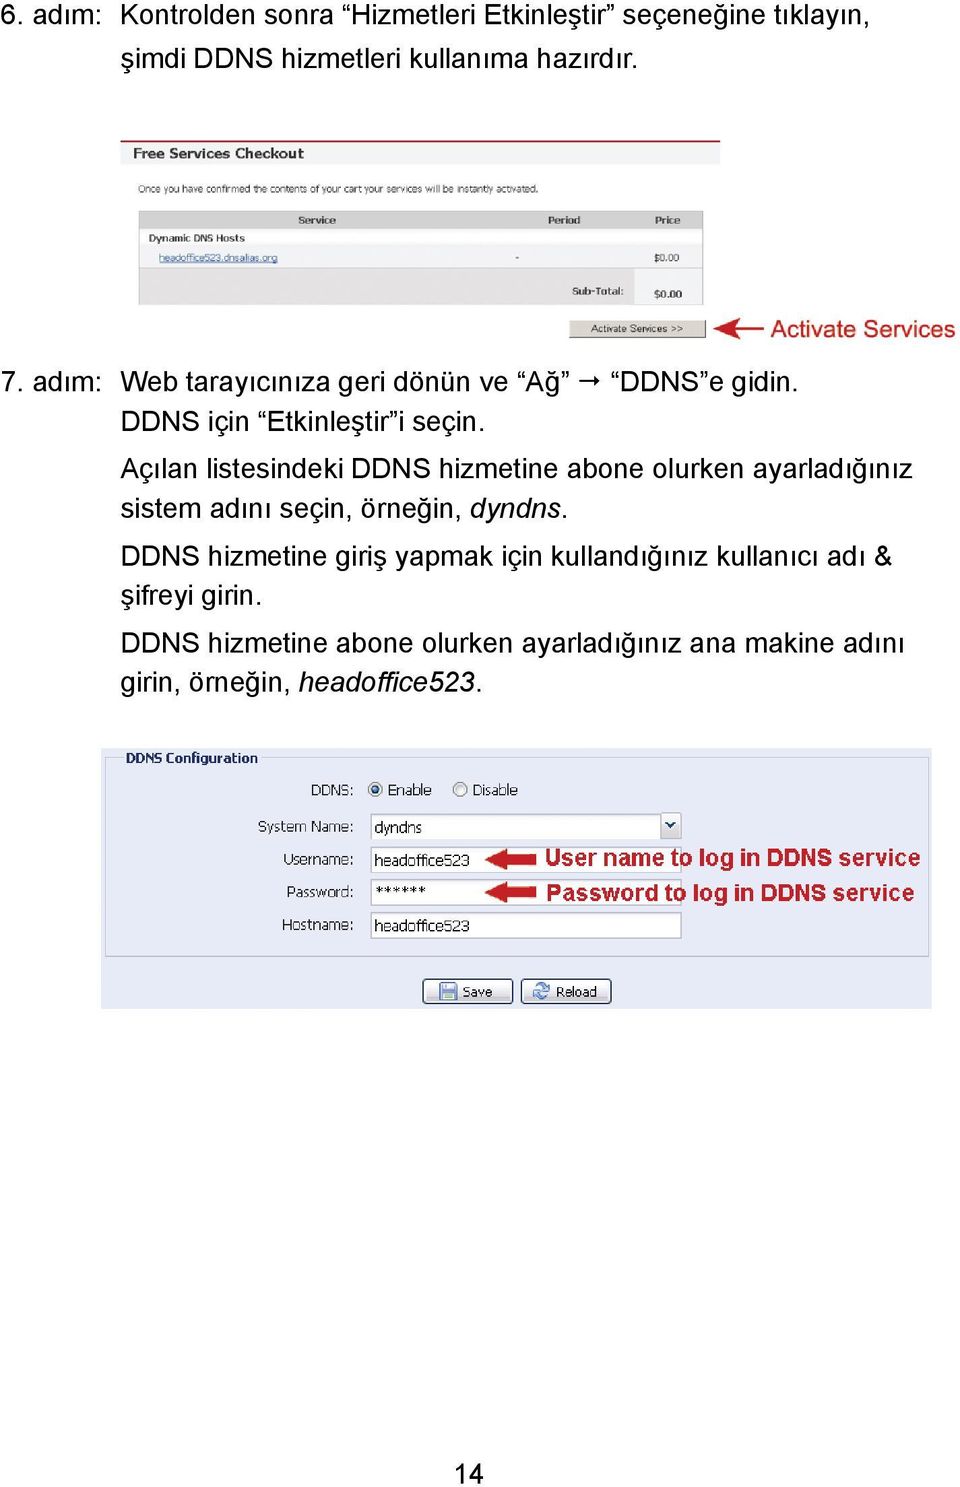 Açılan listesindeki DDNS hizmetine abone olurken ayarladığınız sistem adını seçin, örneğin, dyndns.